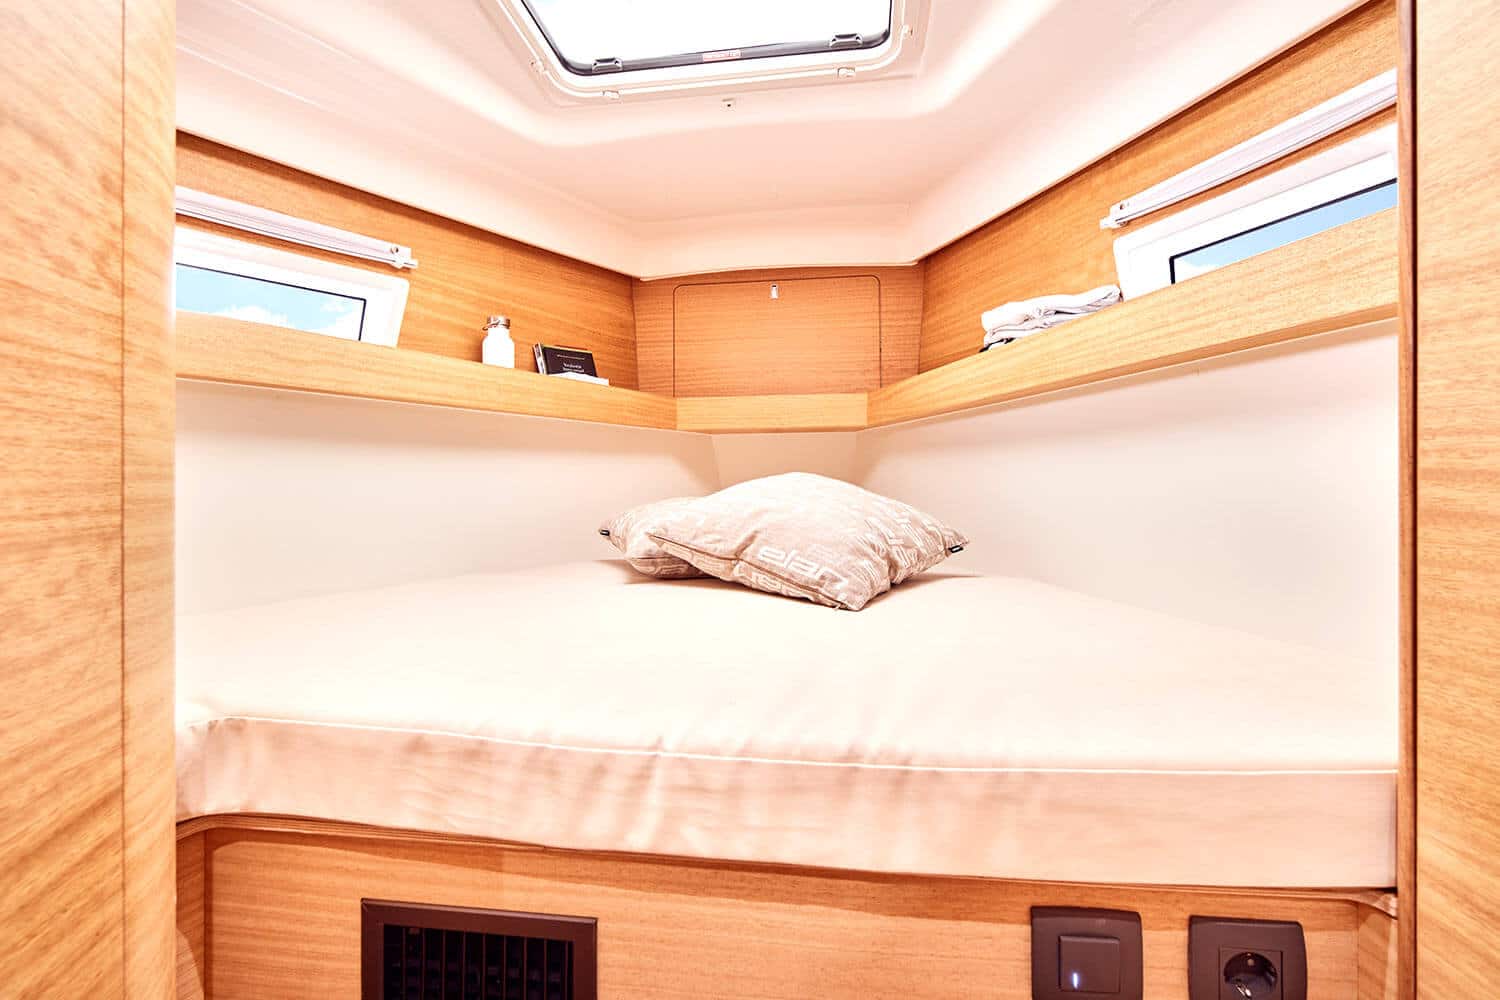 Innenansicht einer kompakten, modernen Segelyacht mit einem ordentlich gemachten Bett mit beigem Kissen, umgeben von hellen Holzschränken, kleinen Fenstern und einem Oberlicht.